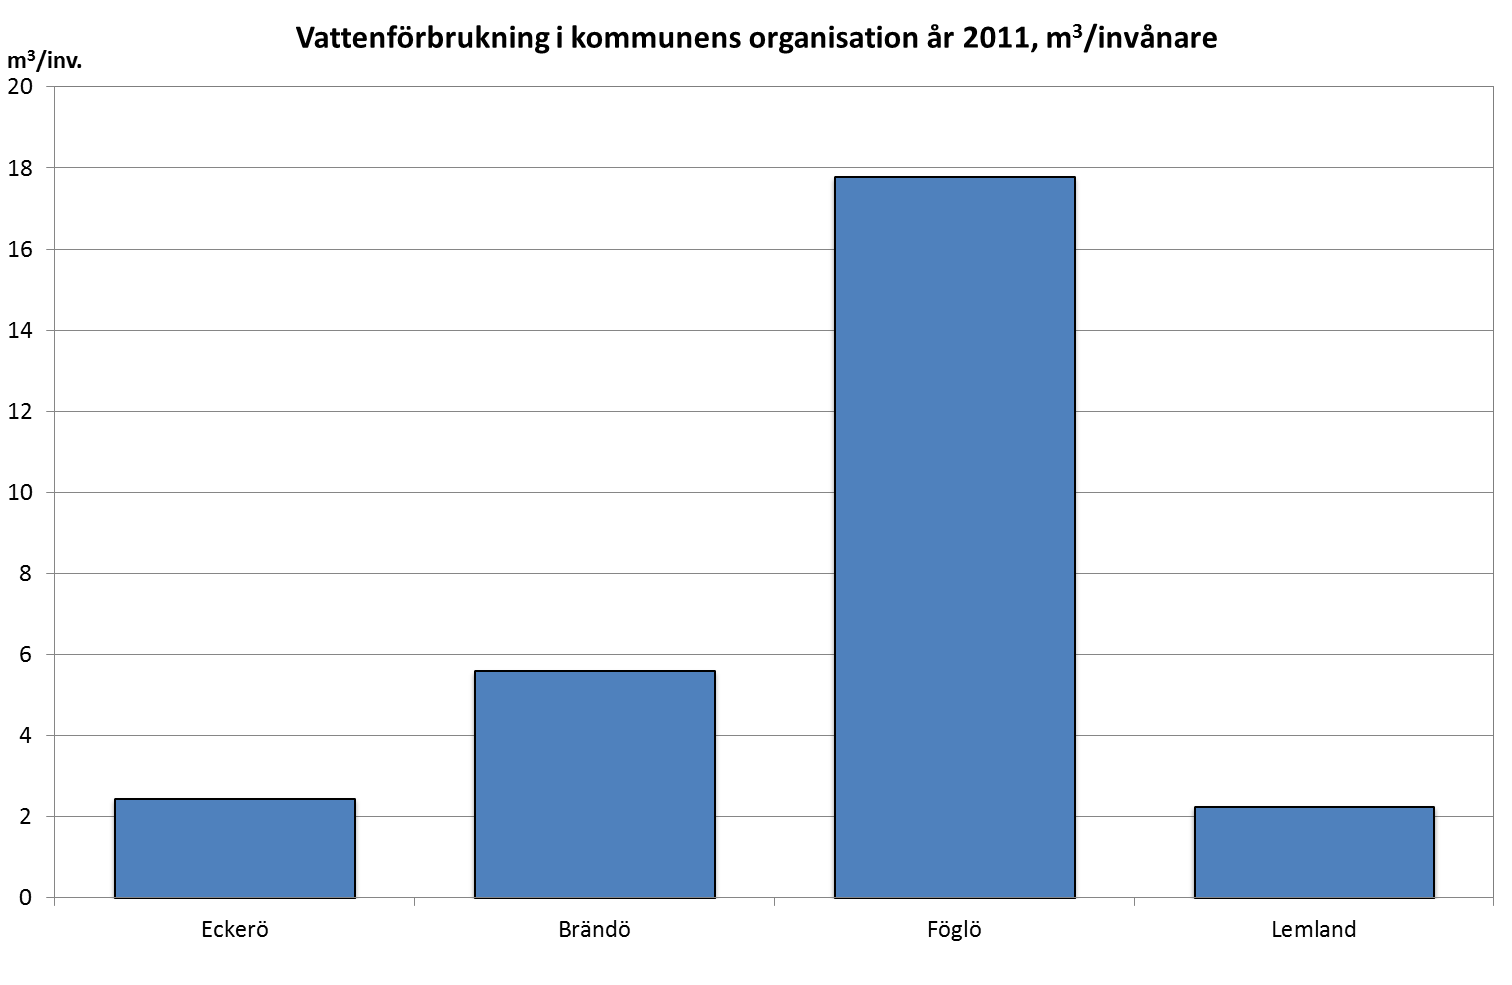 Vattenförbrukningen i kommunens organisation per invånare högst i Föglö 2011